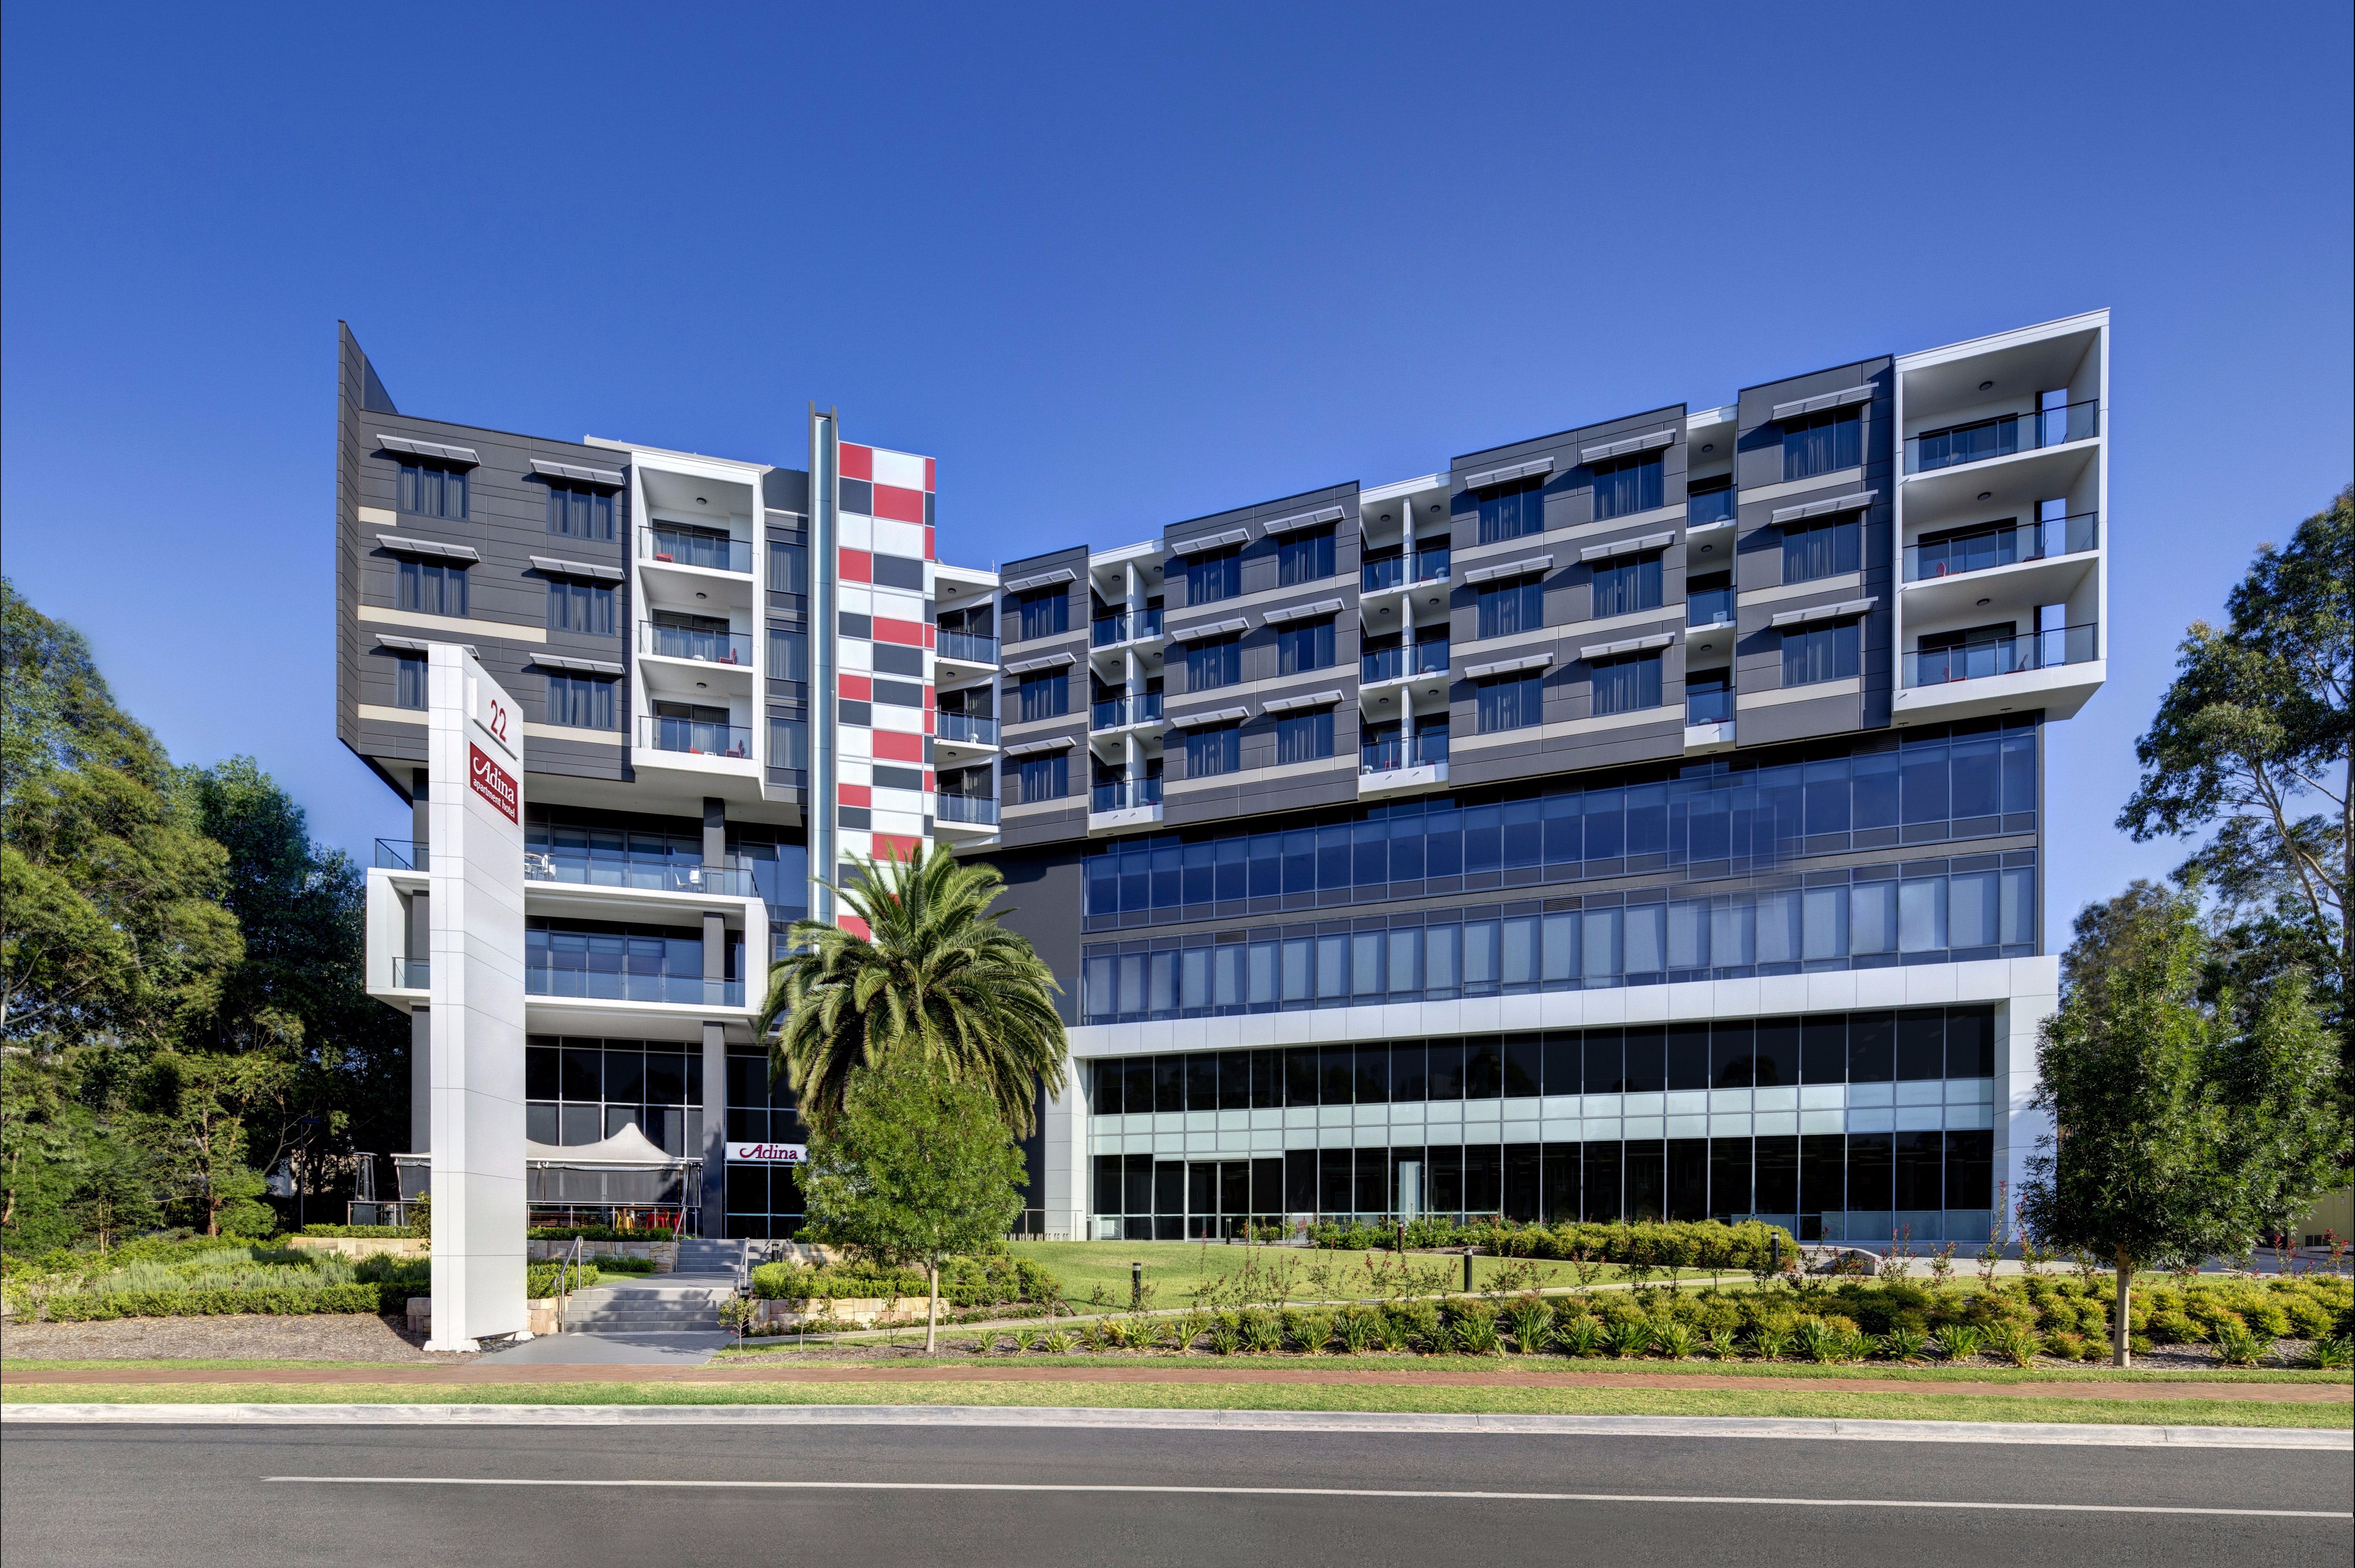 Adina Apartment Hotel Norwest Sydney - Accommodation Redcliffe